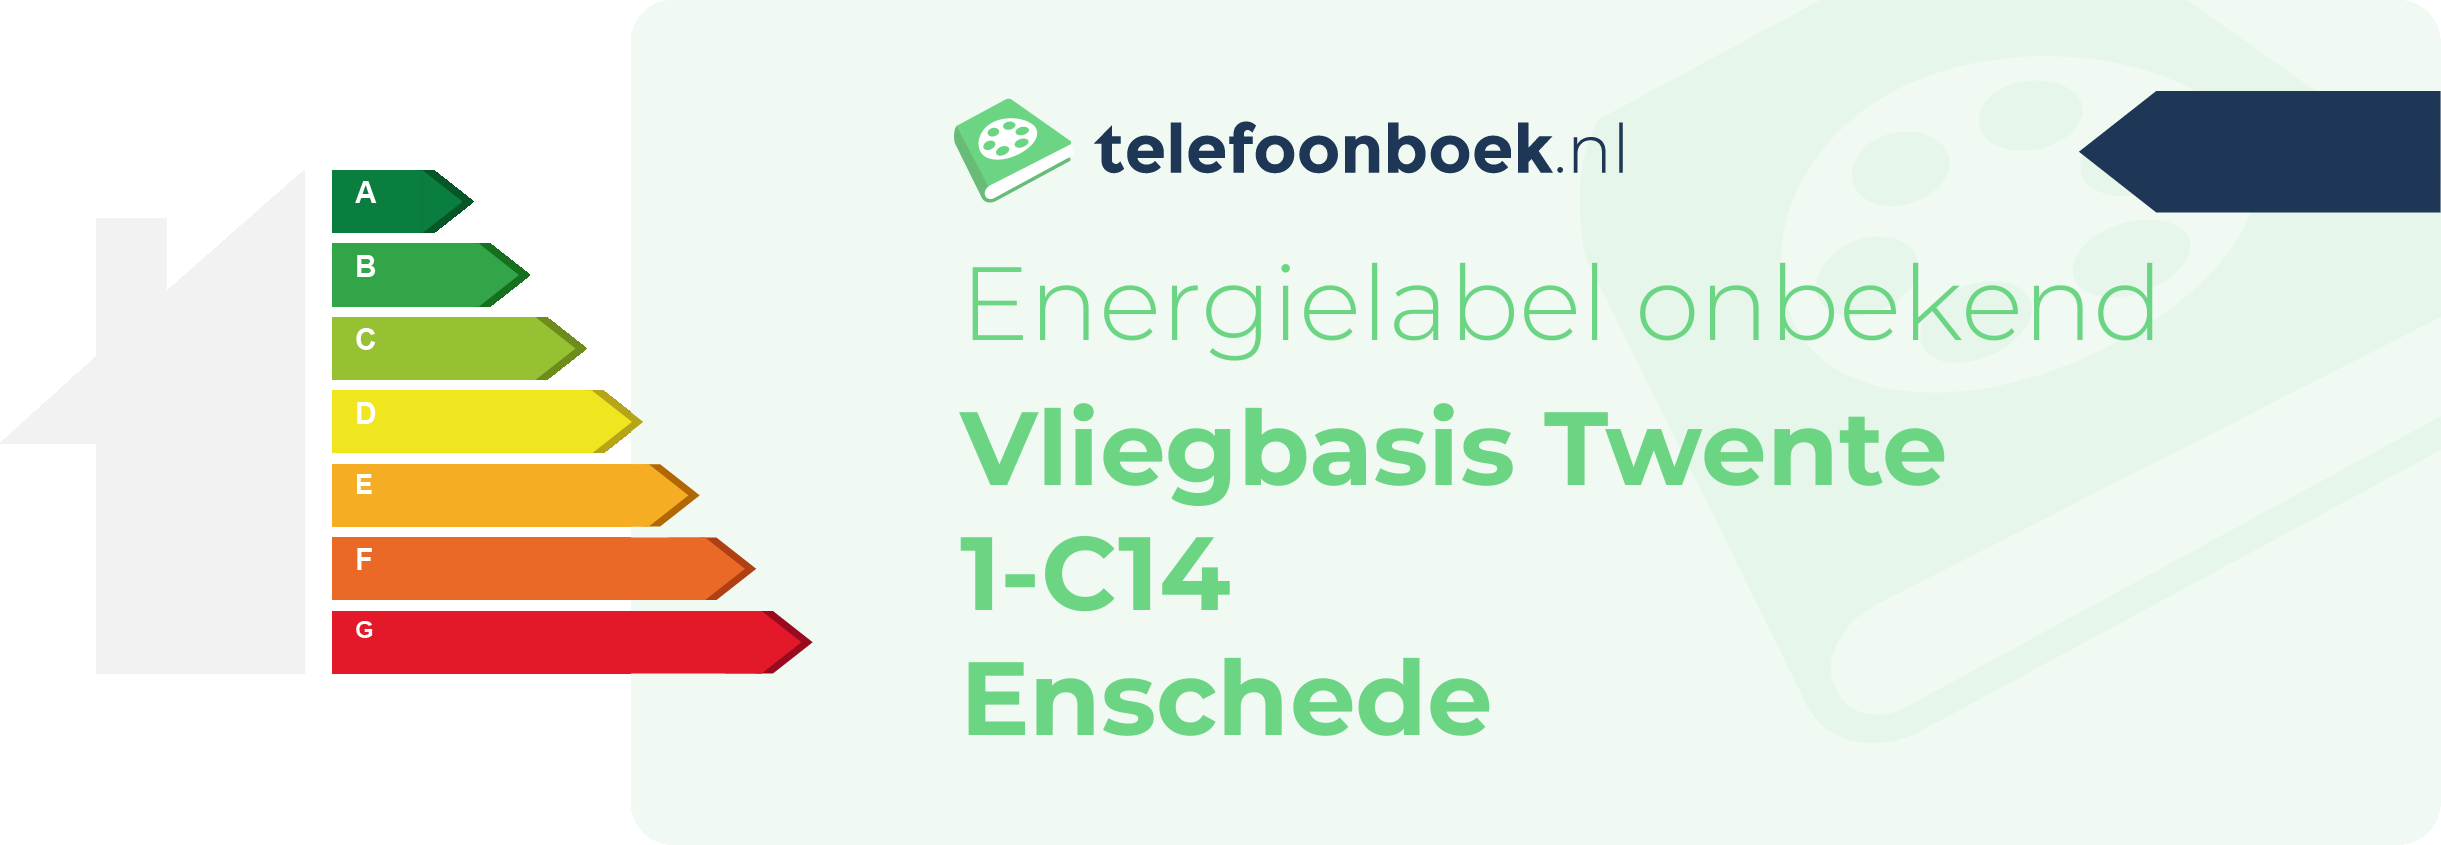 Energielabel Vliegbasis Twente 1-C14 Enschede